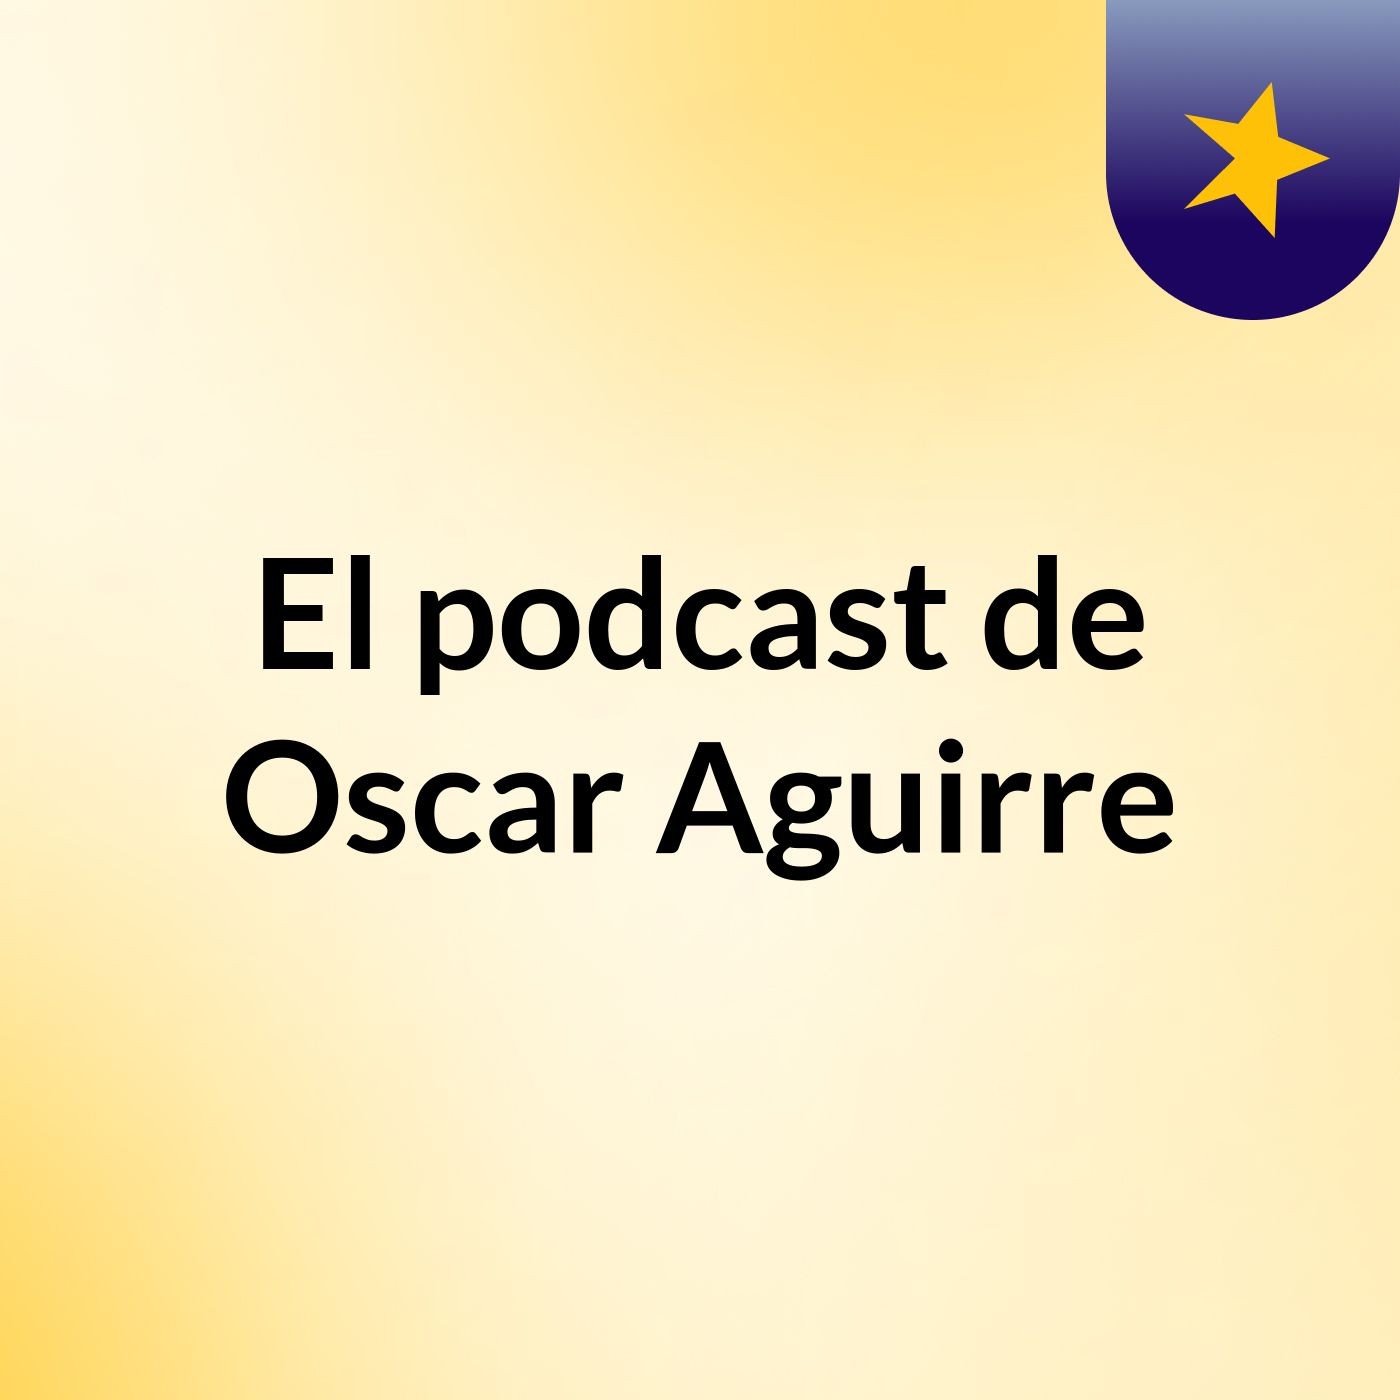 El podcast de Oscar Aguirre